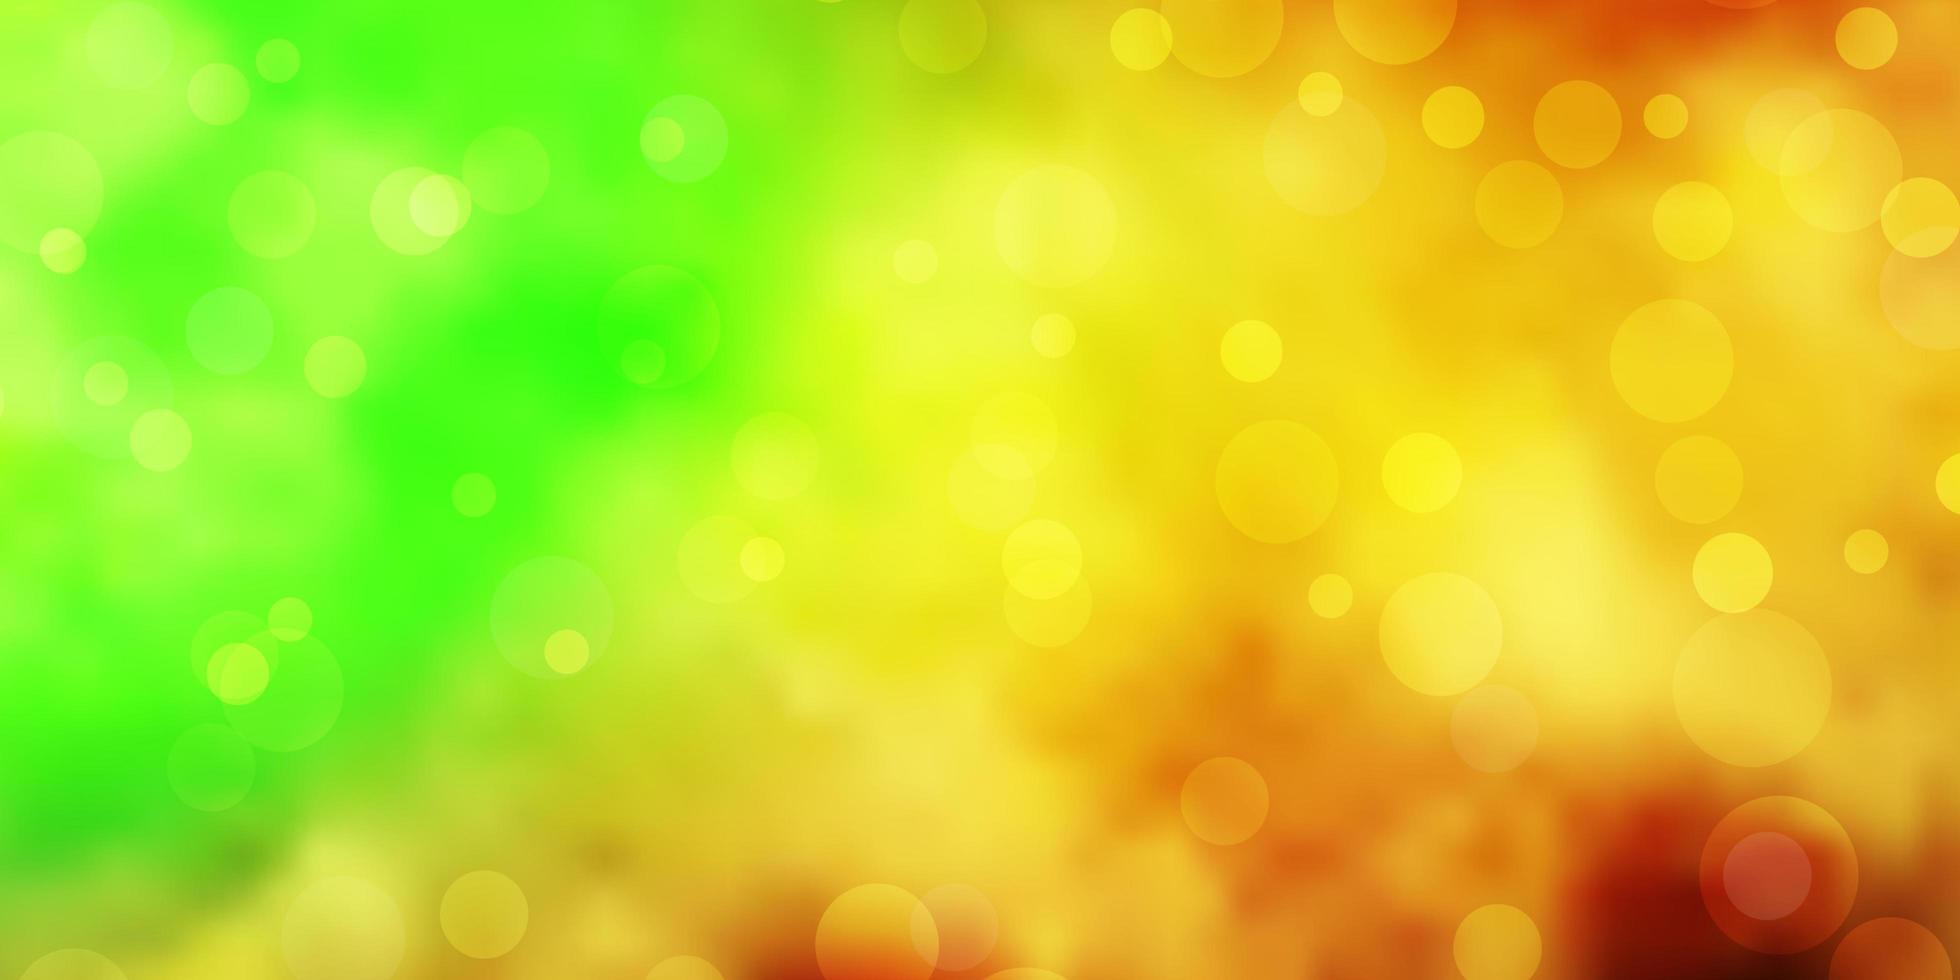 textura de vetor verde e amarelo claro com discos.